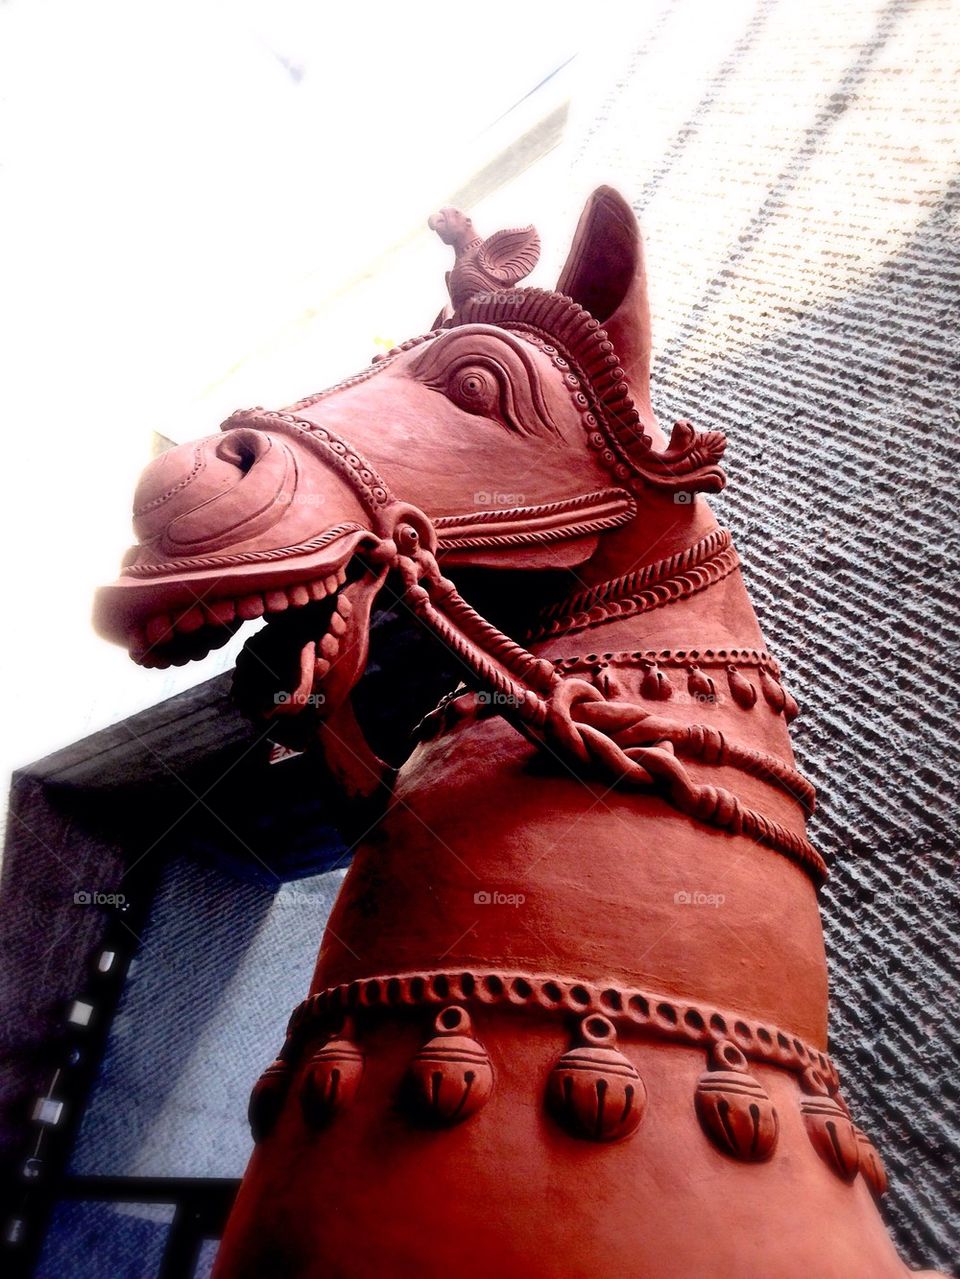 Ceramic horse